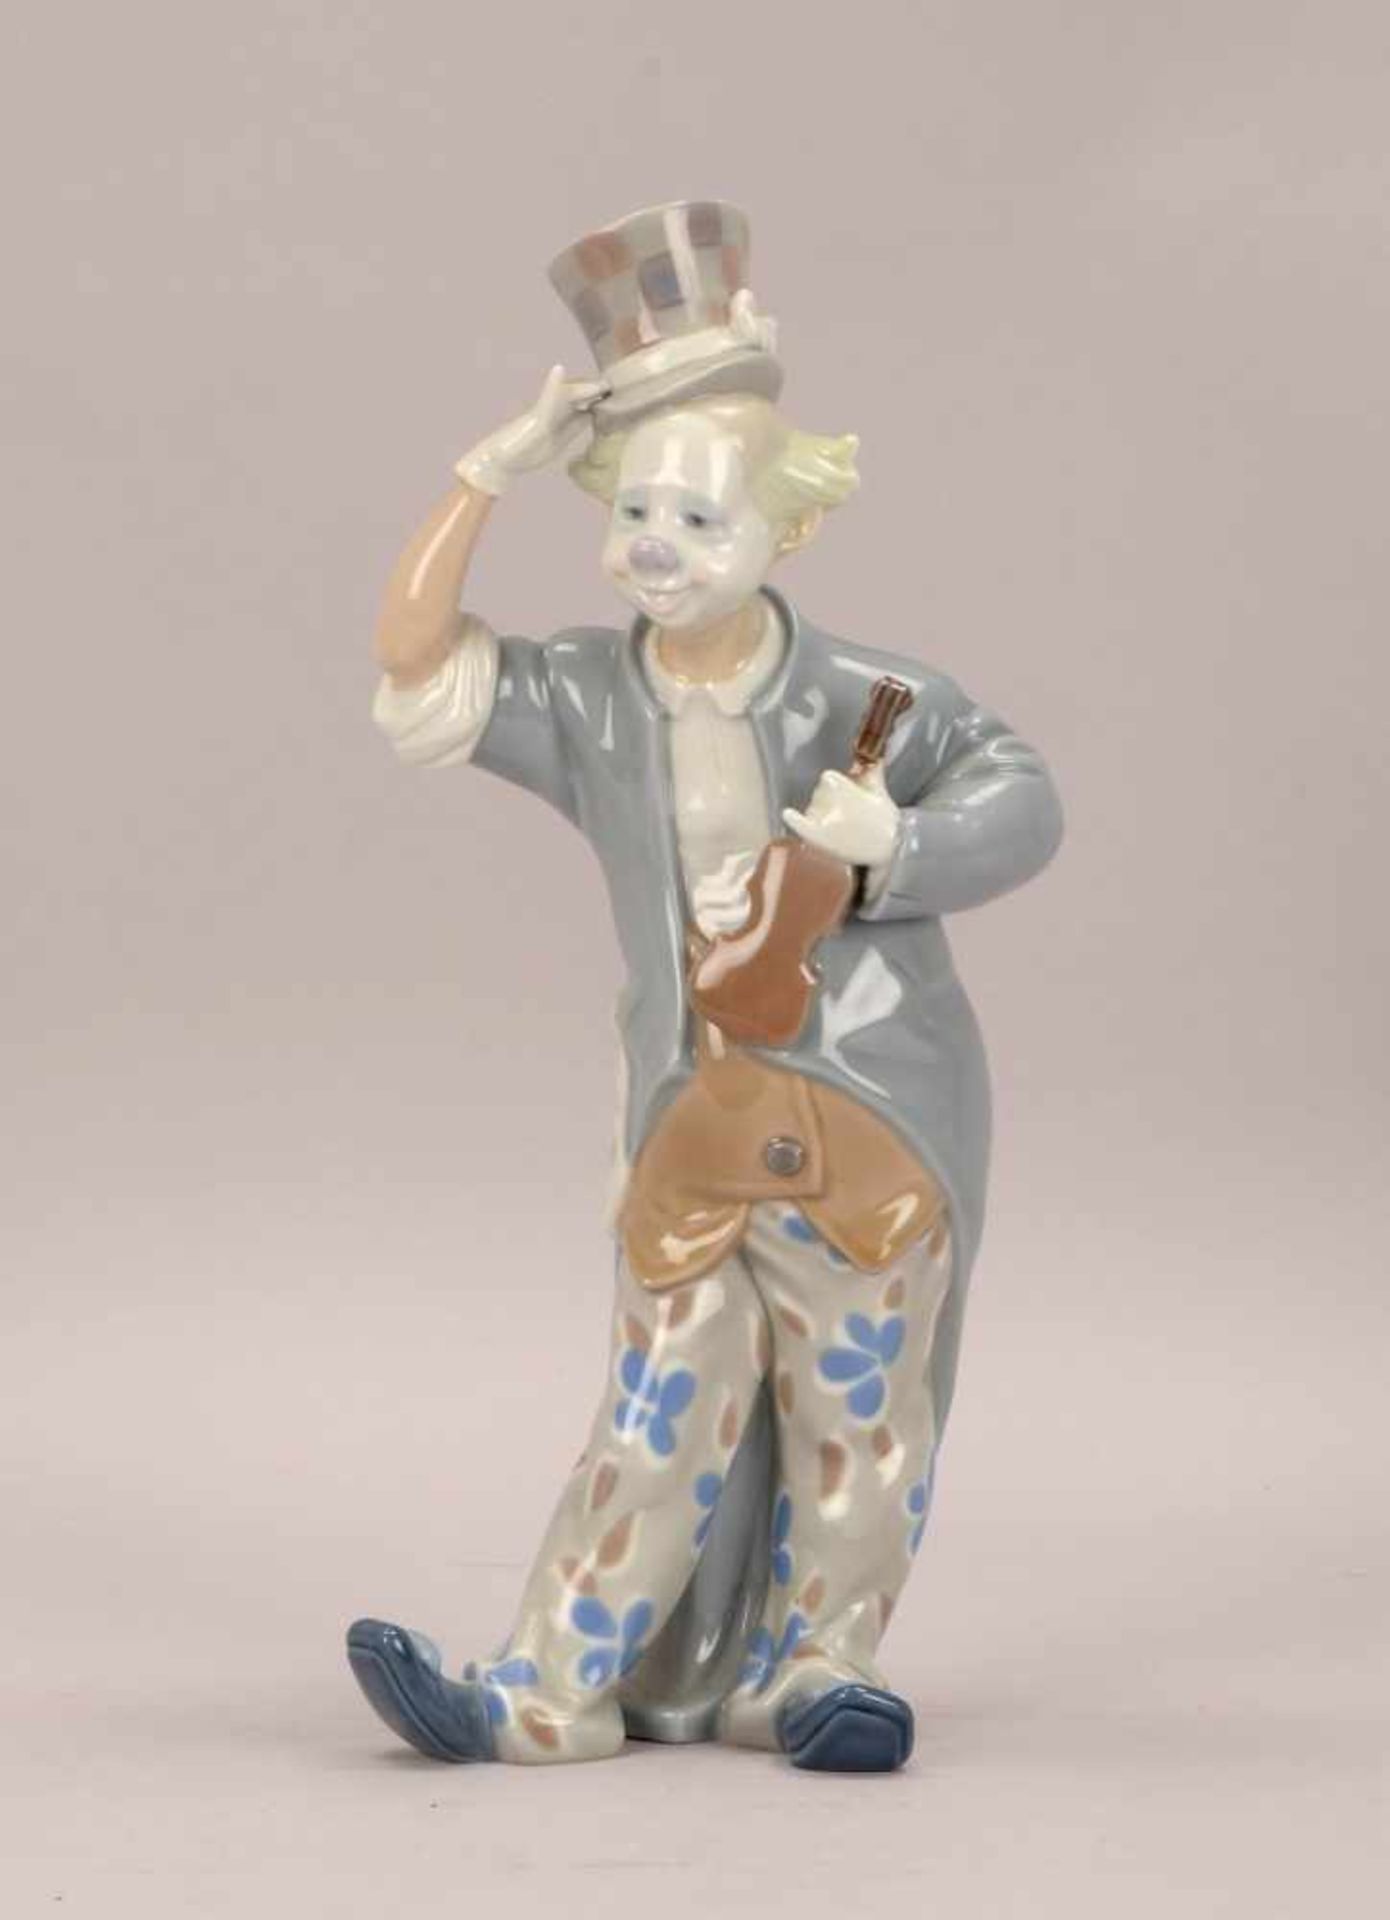 Lladro/Spanien, Porzellanfigur, 'Clown mit Geige', pastose Unterglasurfarben; Höhe 35 cm